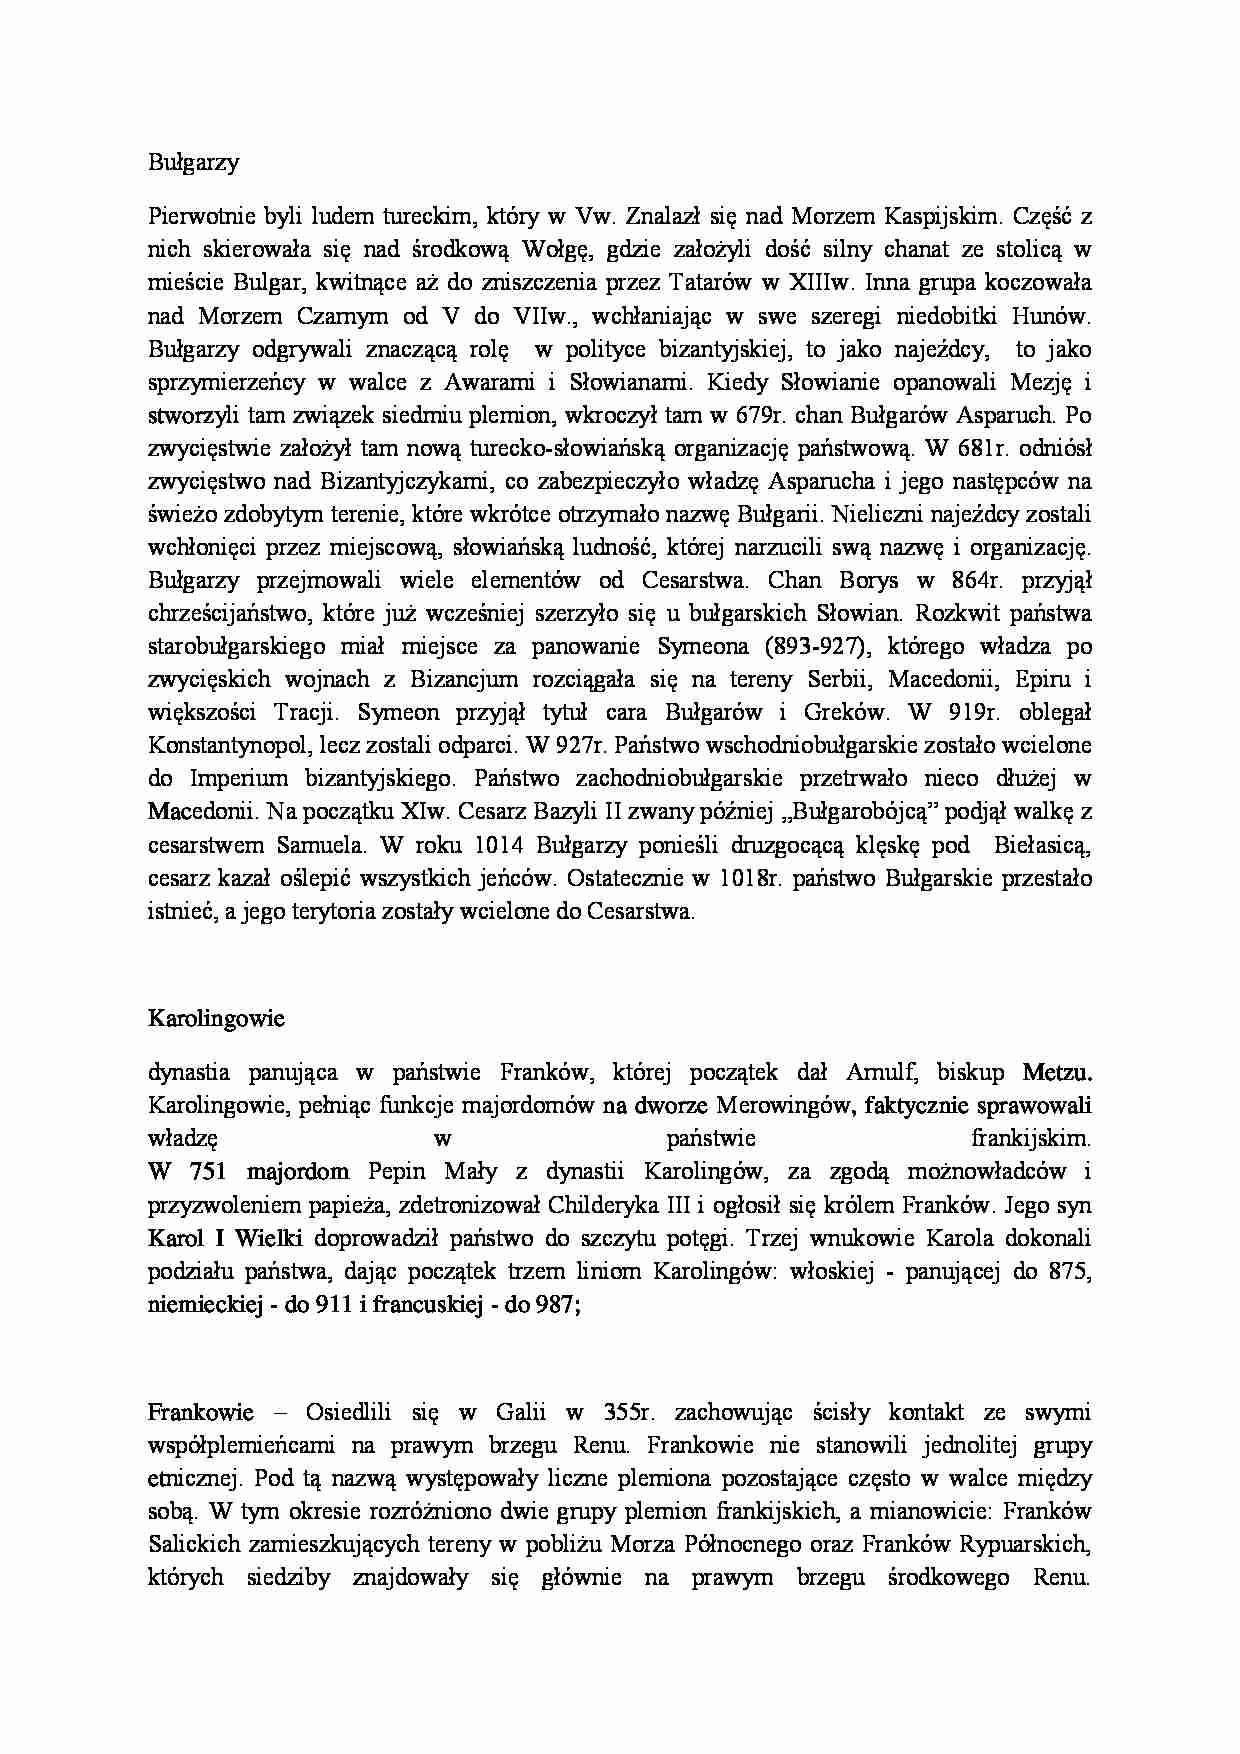 Bułgarzy, Karolingowie, Frankowie-opracowanie - strona 1